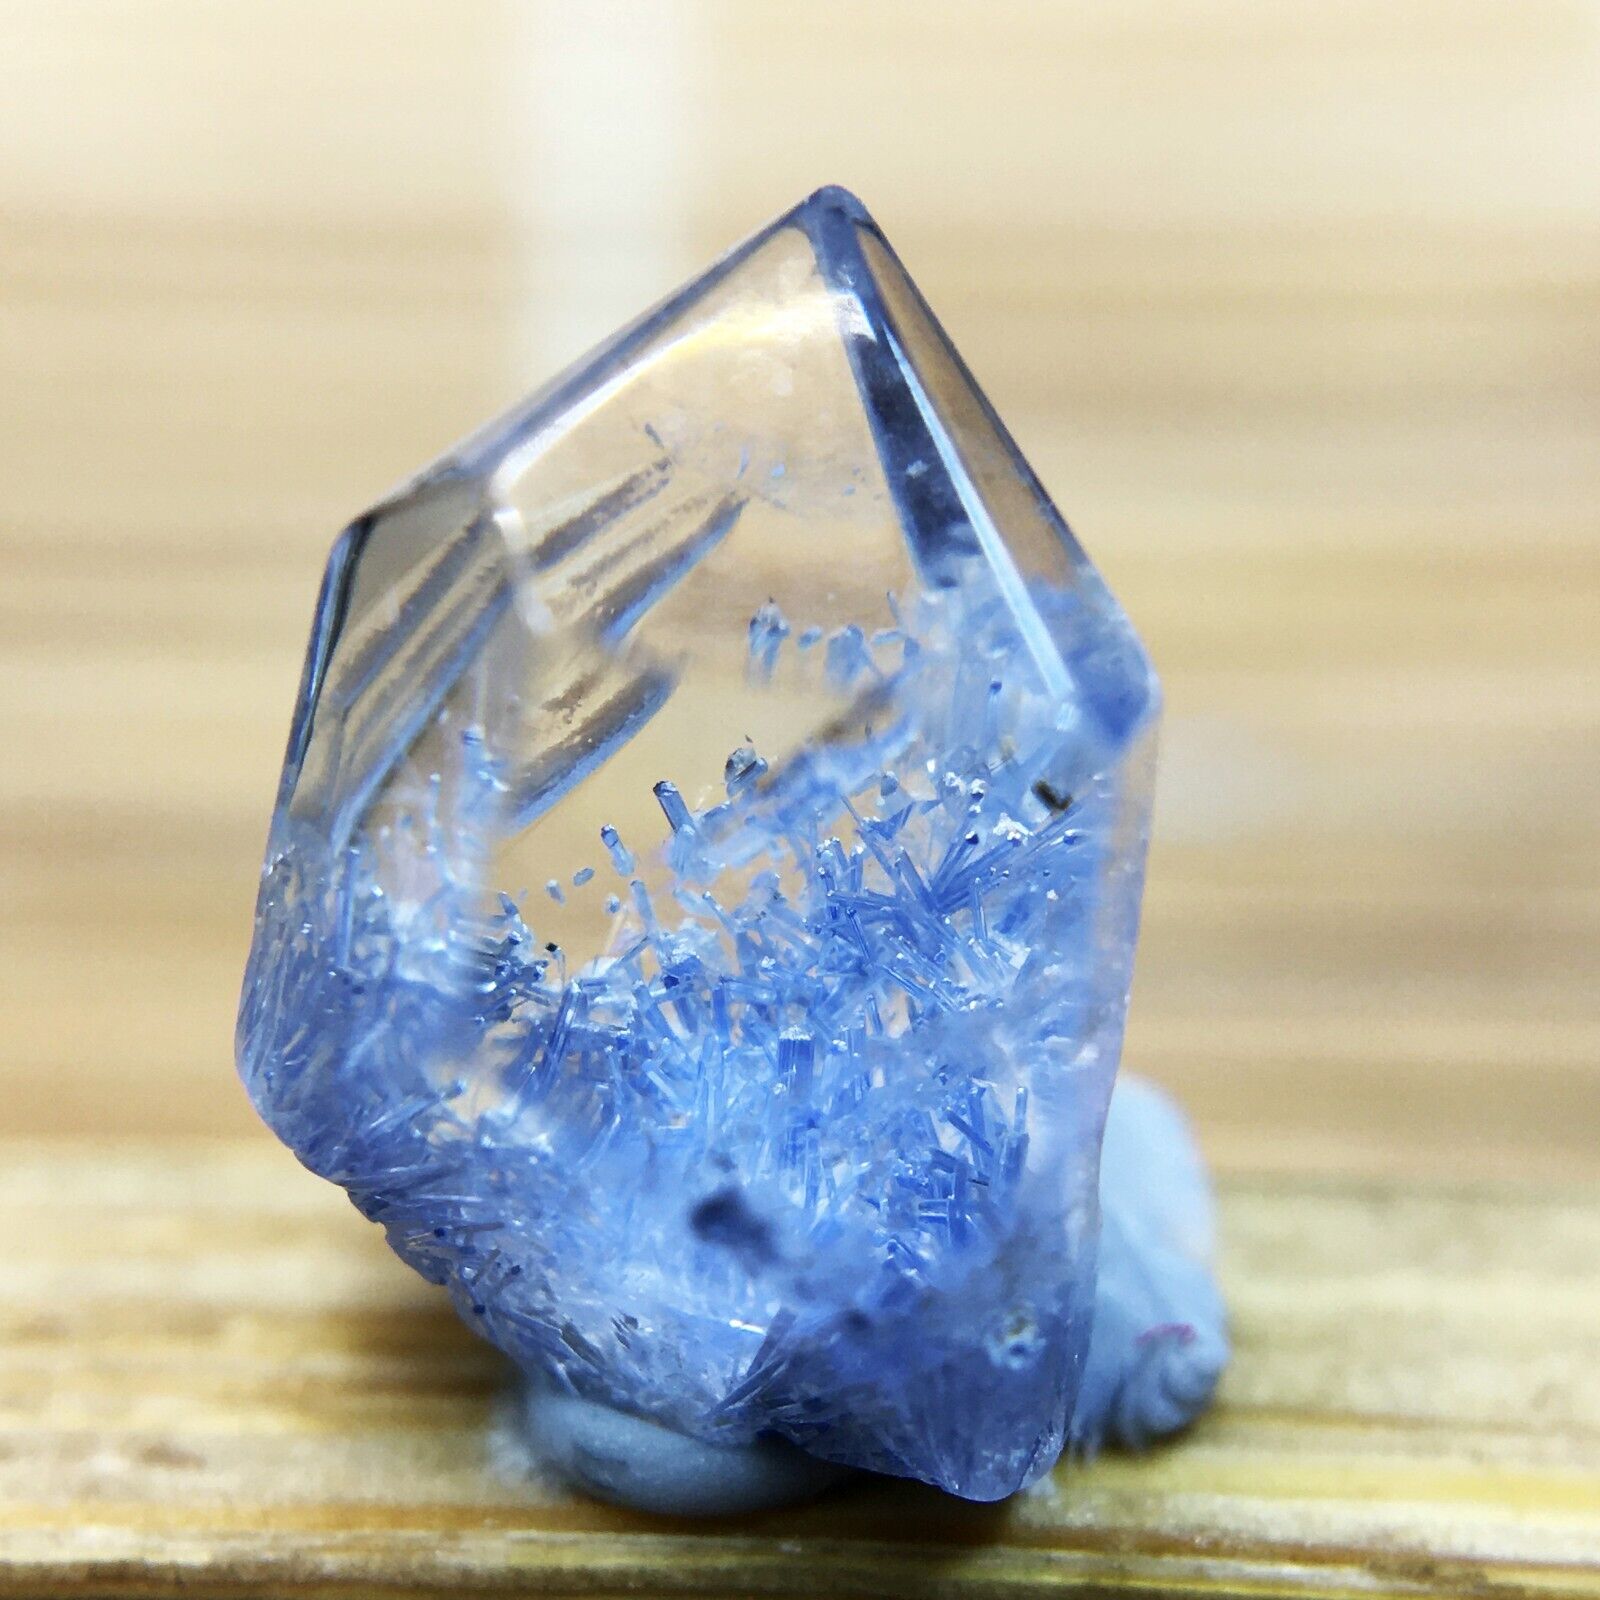 1.4Ct Very Rare NATURAL Beautiful Blue Dumortierite Quartz Crystal Specimen